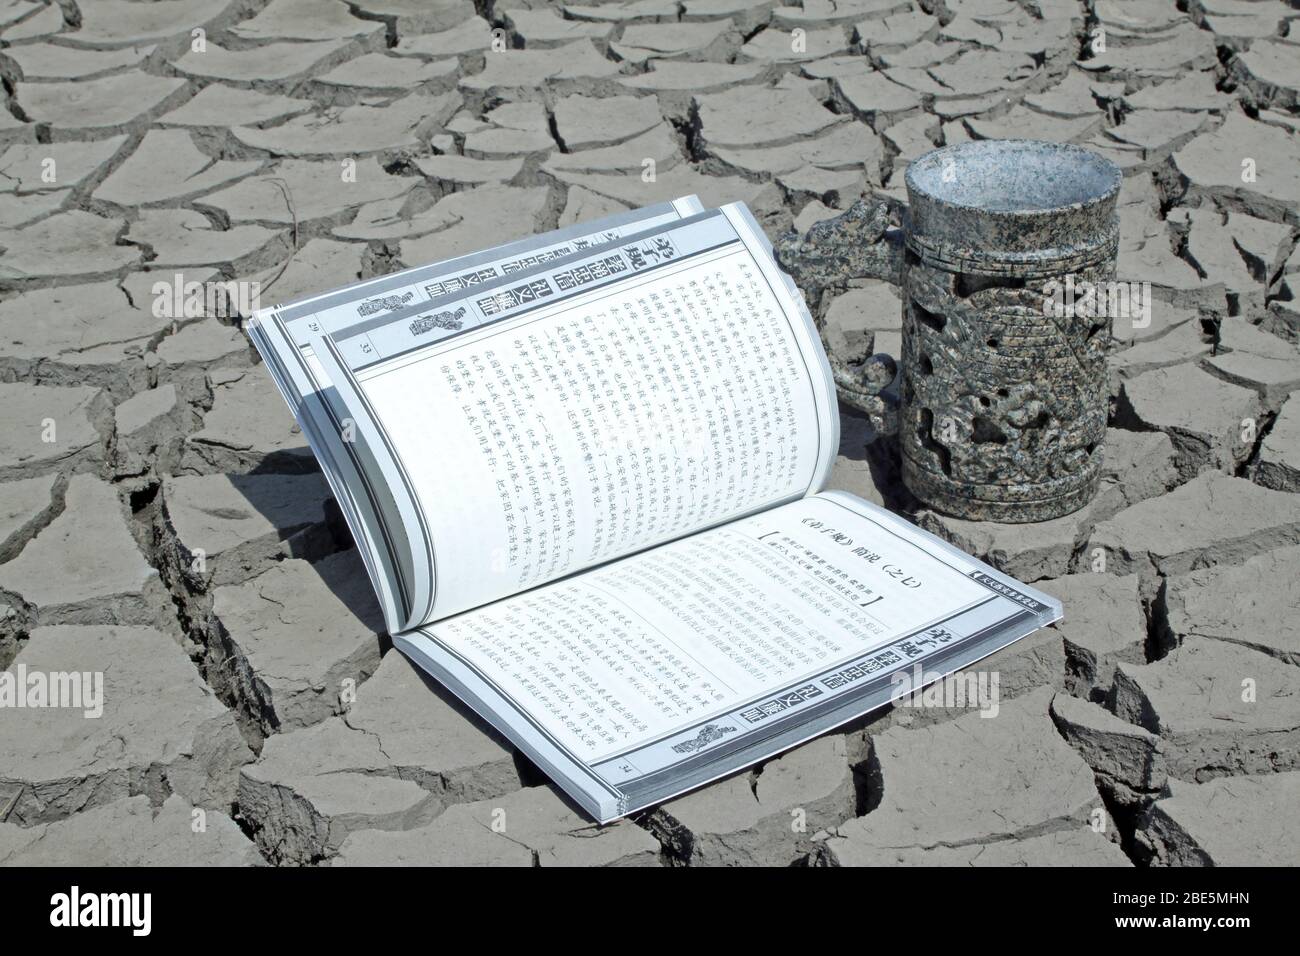 primo piano di libro e coppa in terra asciutta, immagini creative, metafora della conoscenza come acqua di sorgente, come è indispensabile per la gente. Foto Stock